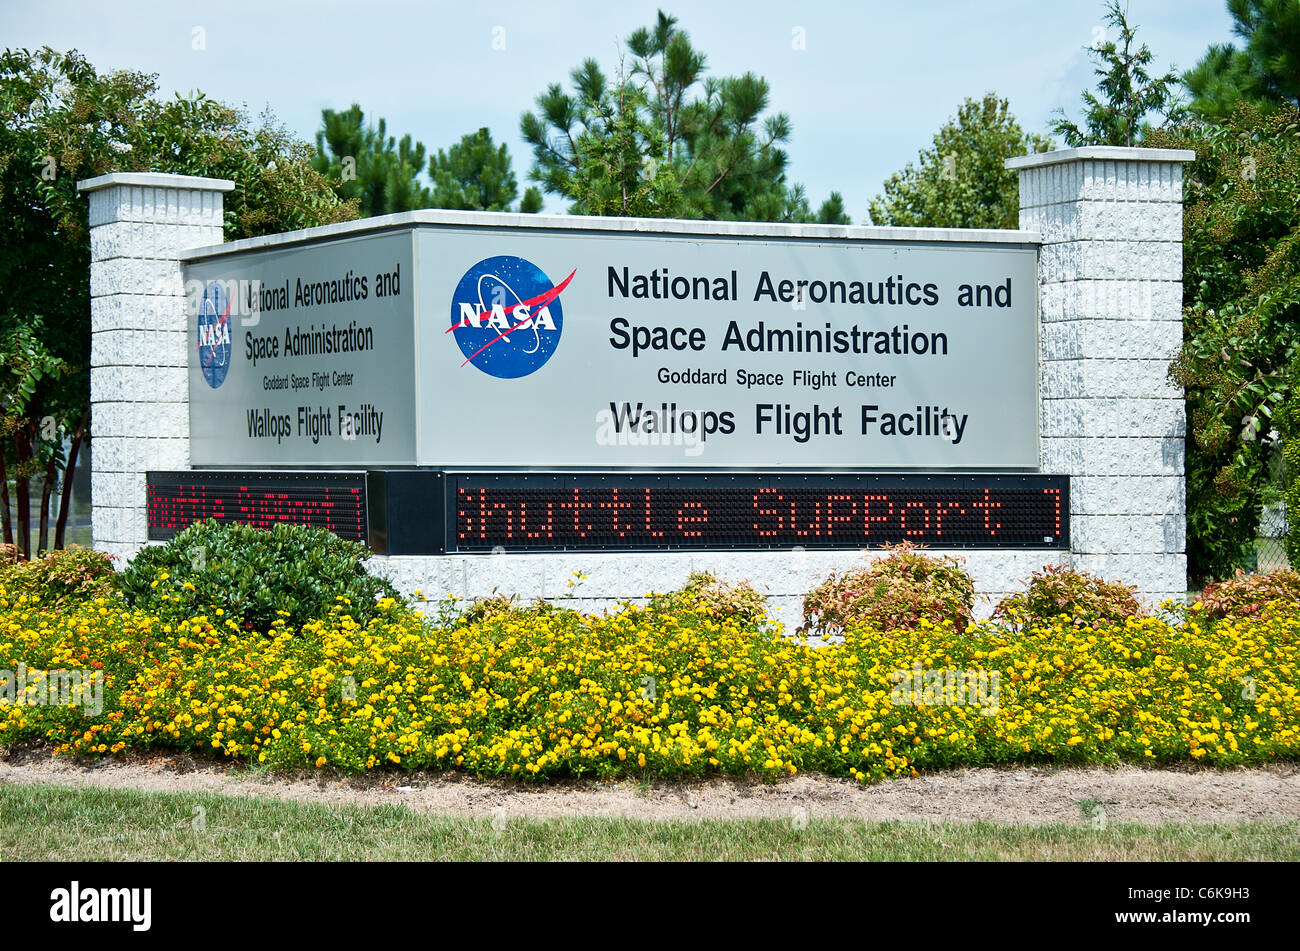 Centro de Vuelo Espacial Goddard de la nasa's Wallops Flight Facility, wallops, Virginia, EE.UU. Foto de stock